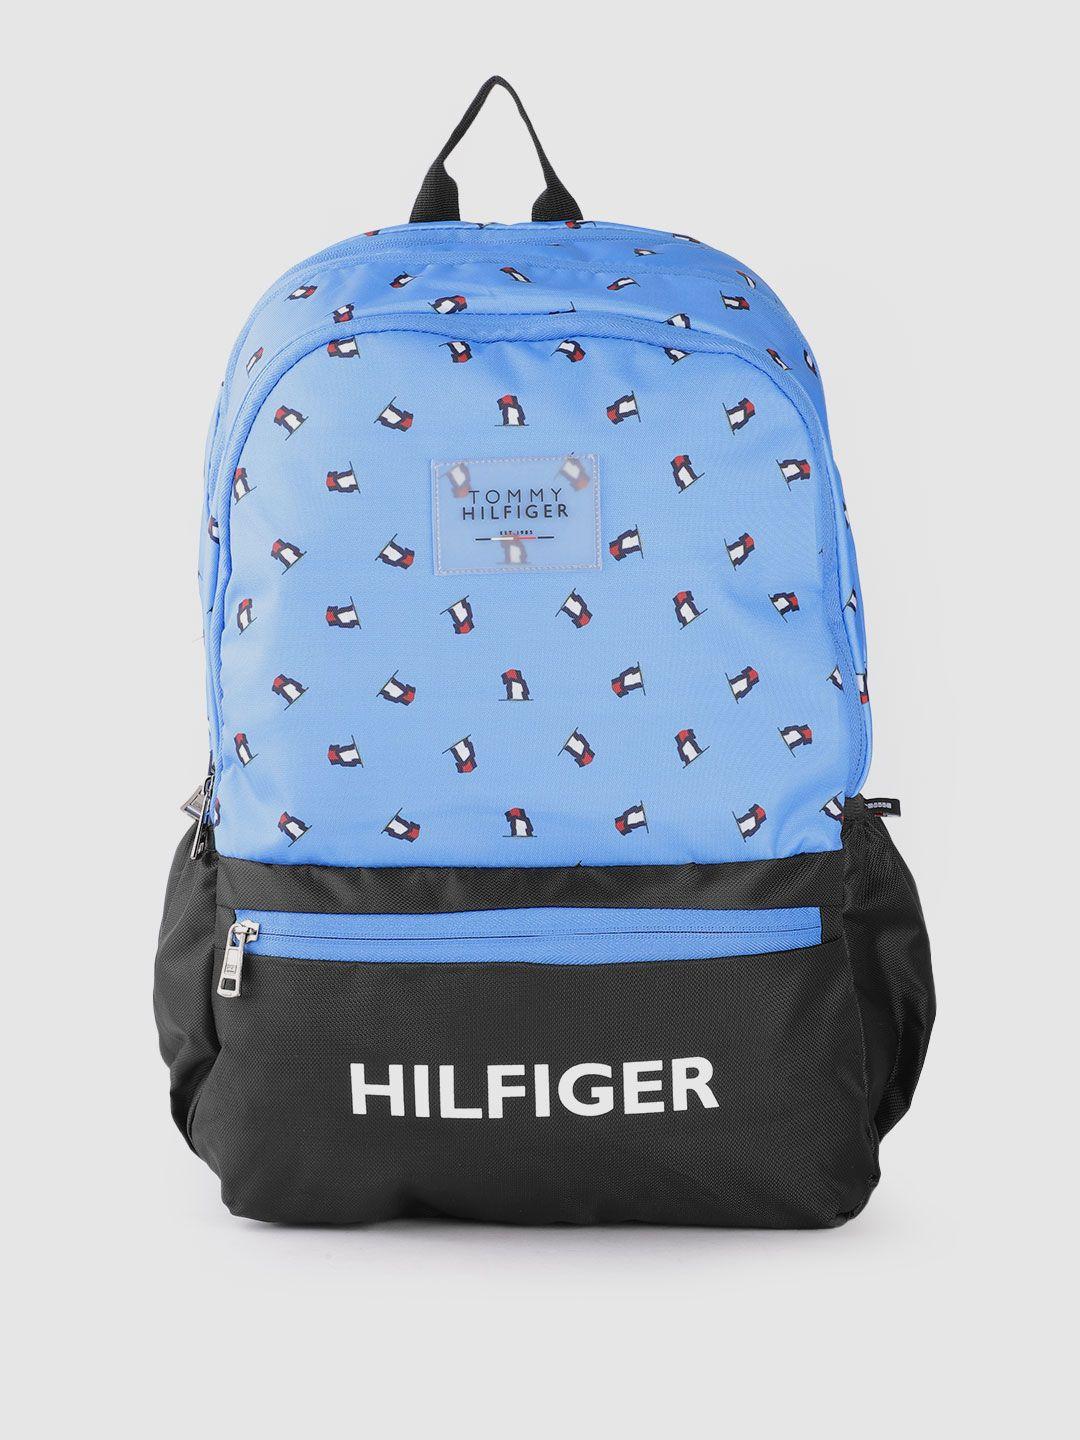 tommy hilfiger unisex blue & black applique backpack